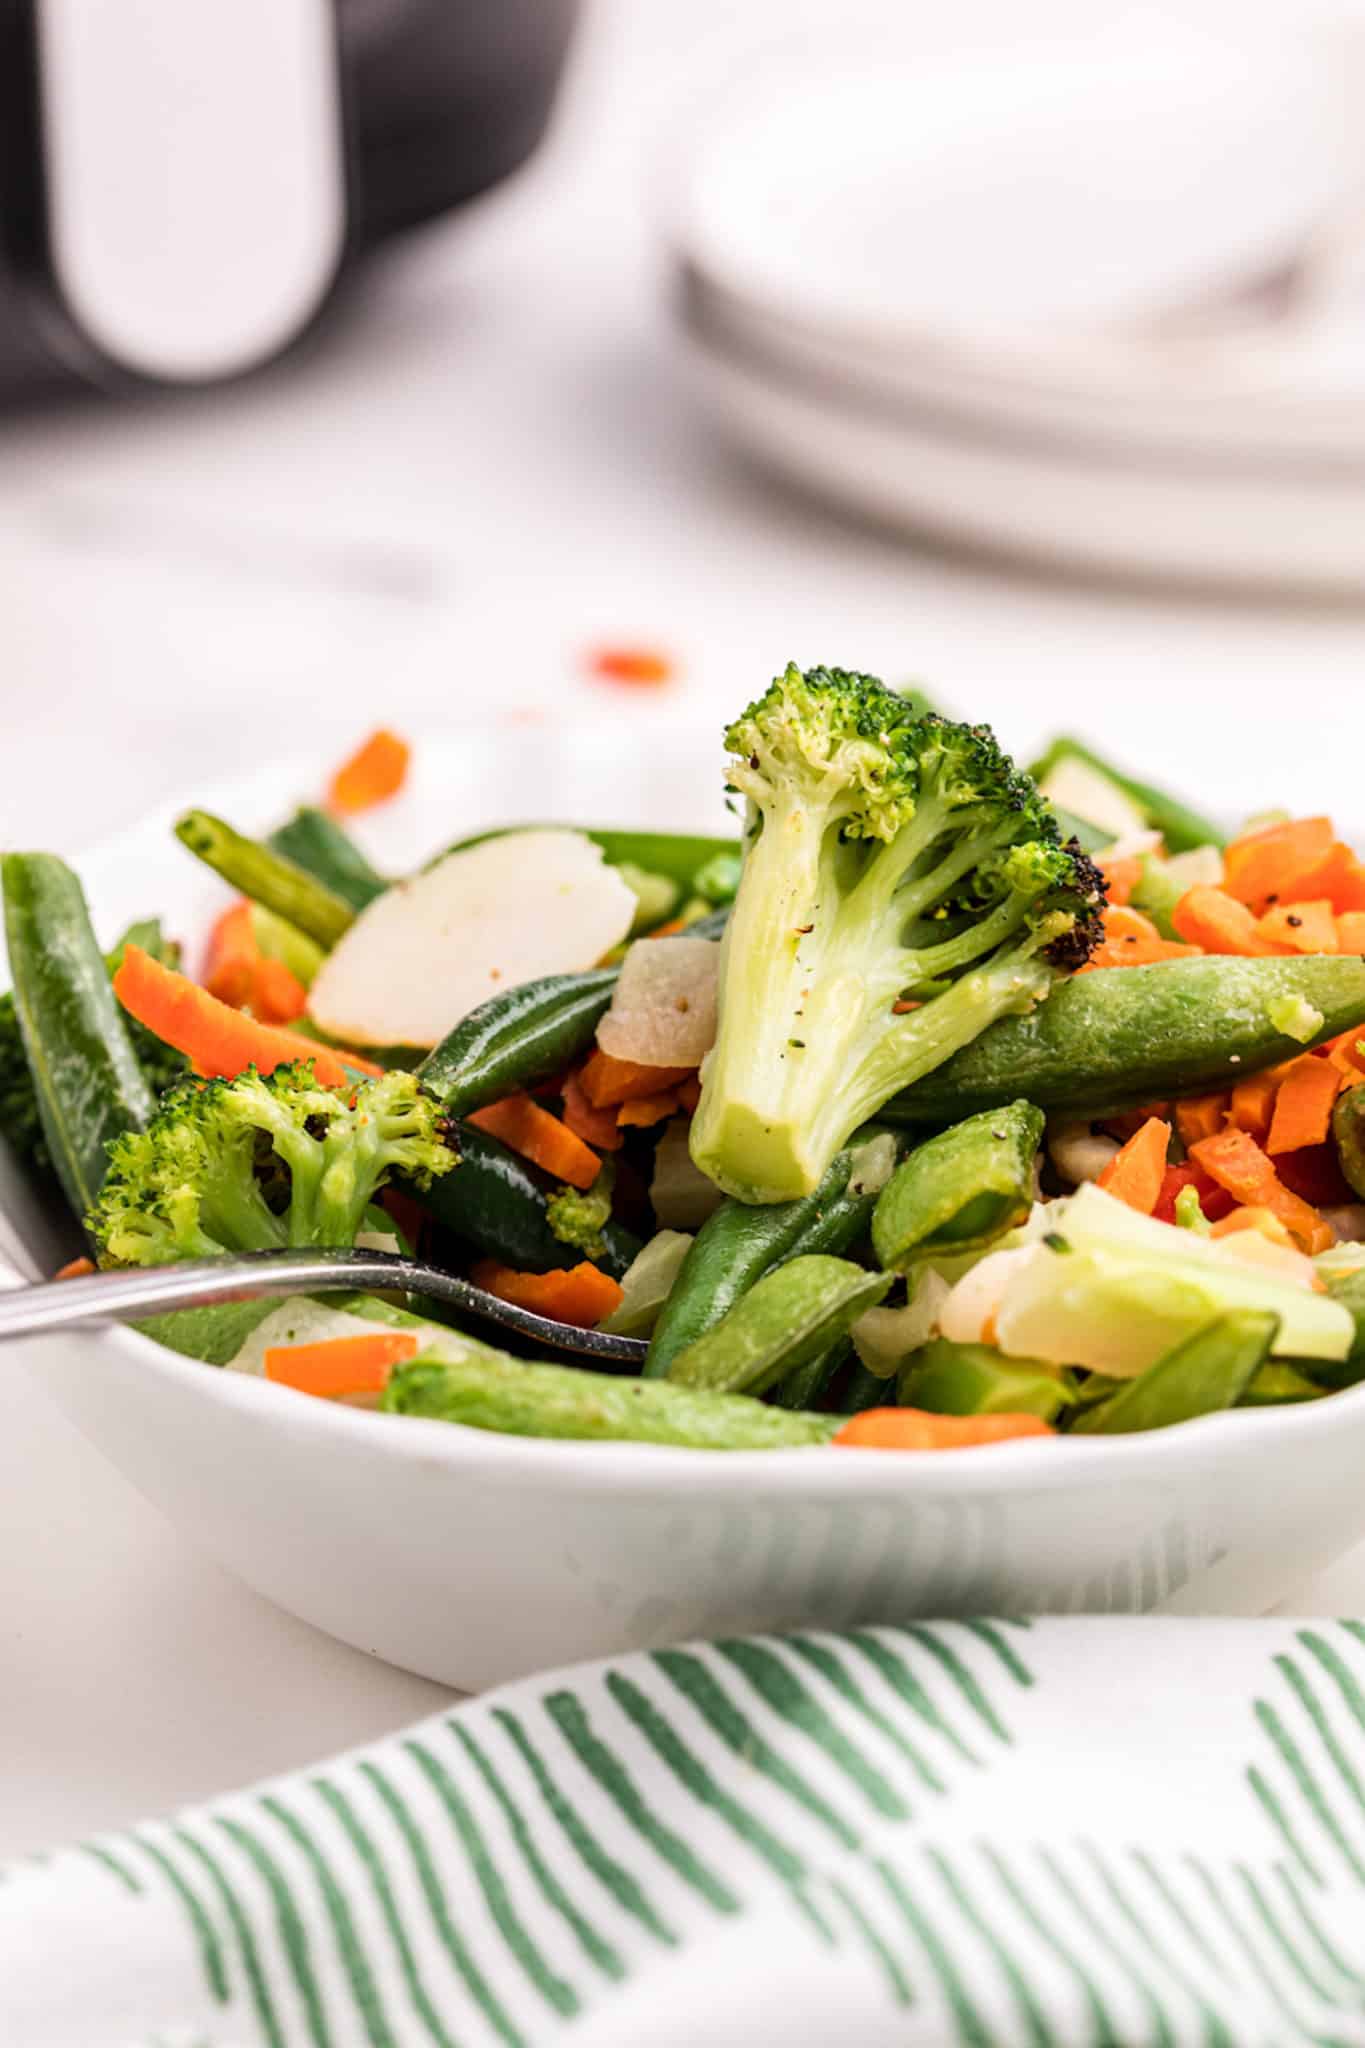 Healthy Air Fryer Vegetables - Air Fry Ninja Foodi Vegetables